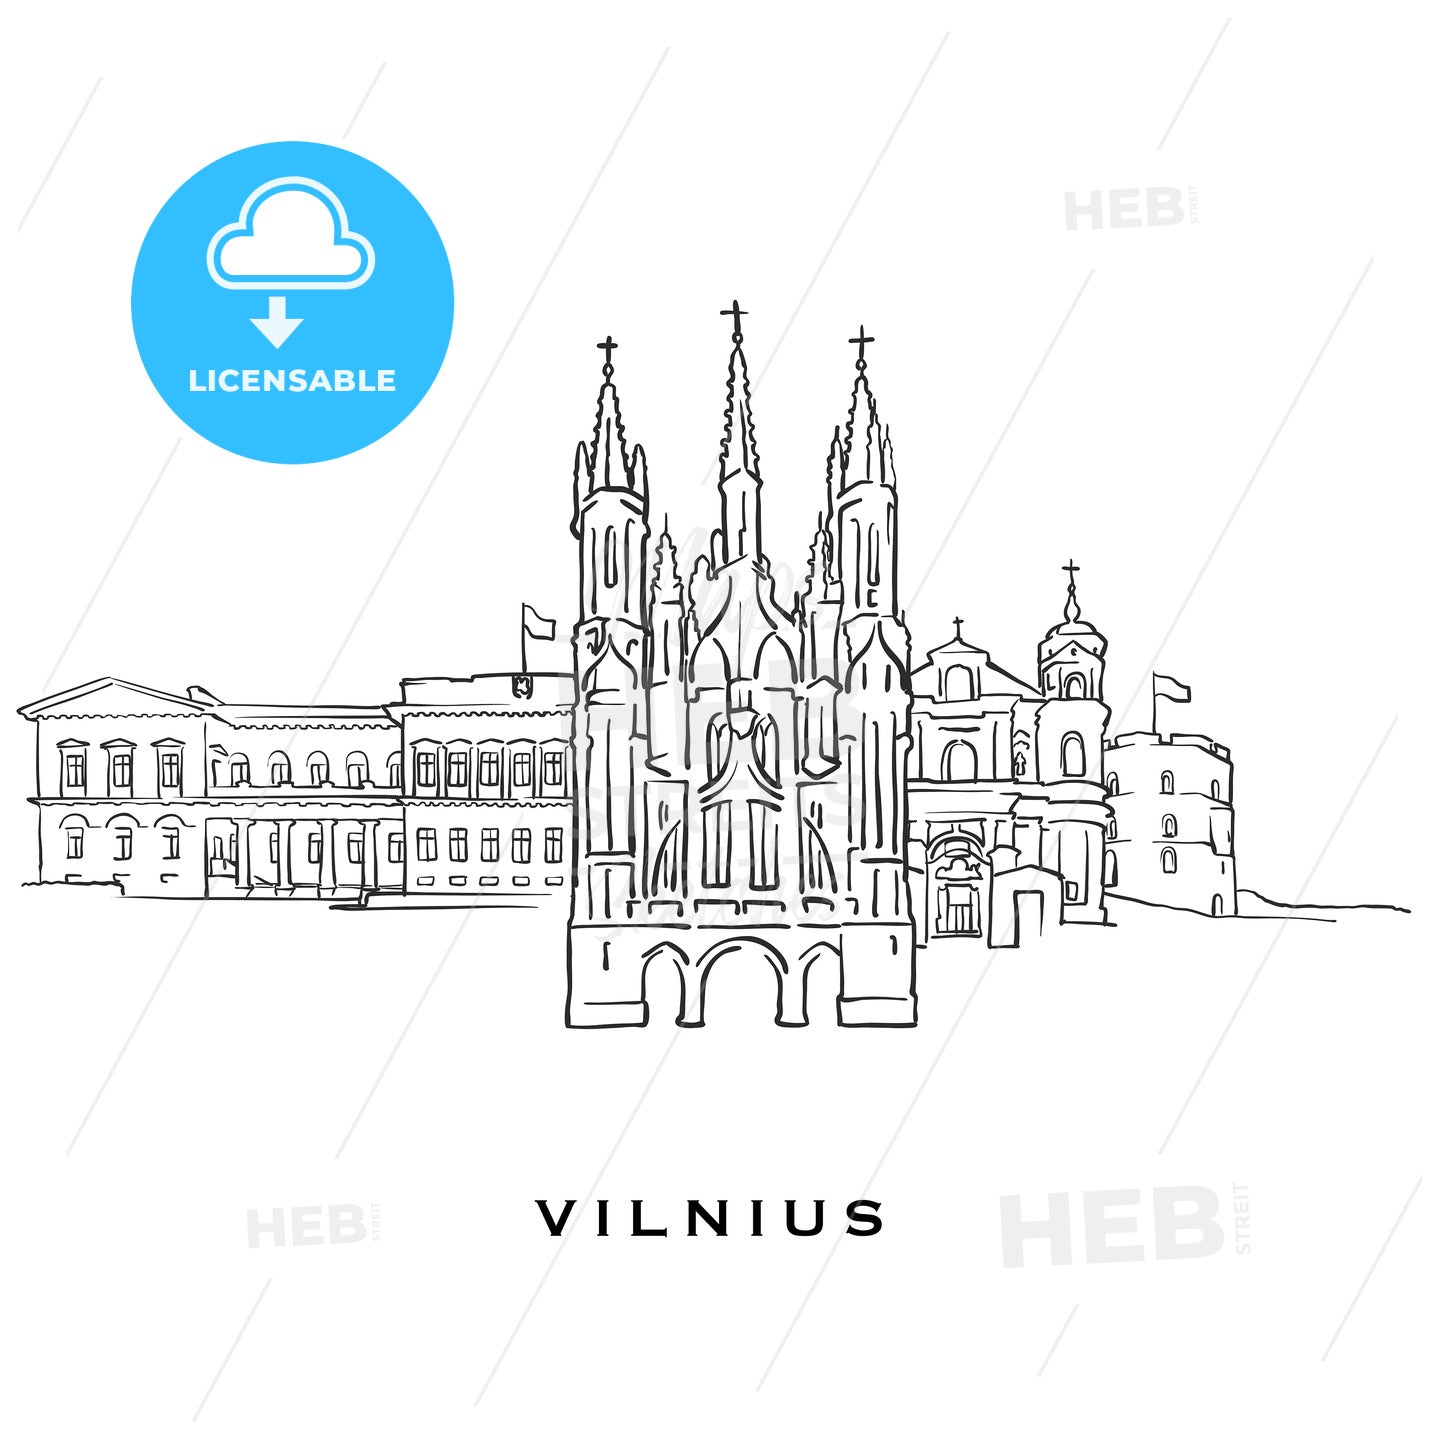 Vilnius Lithuania famous architecture – instant download